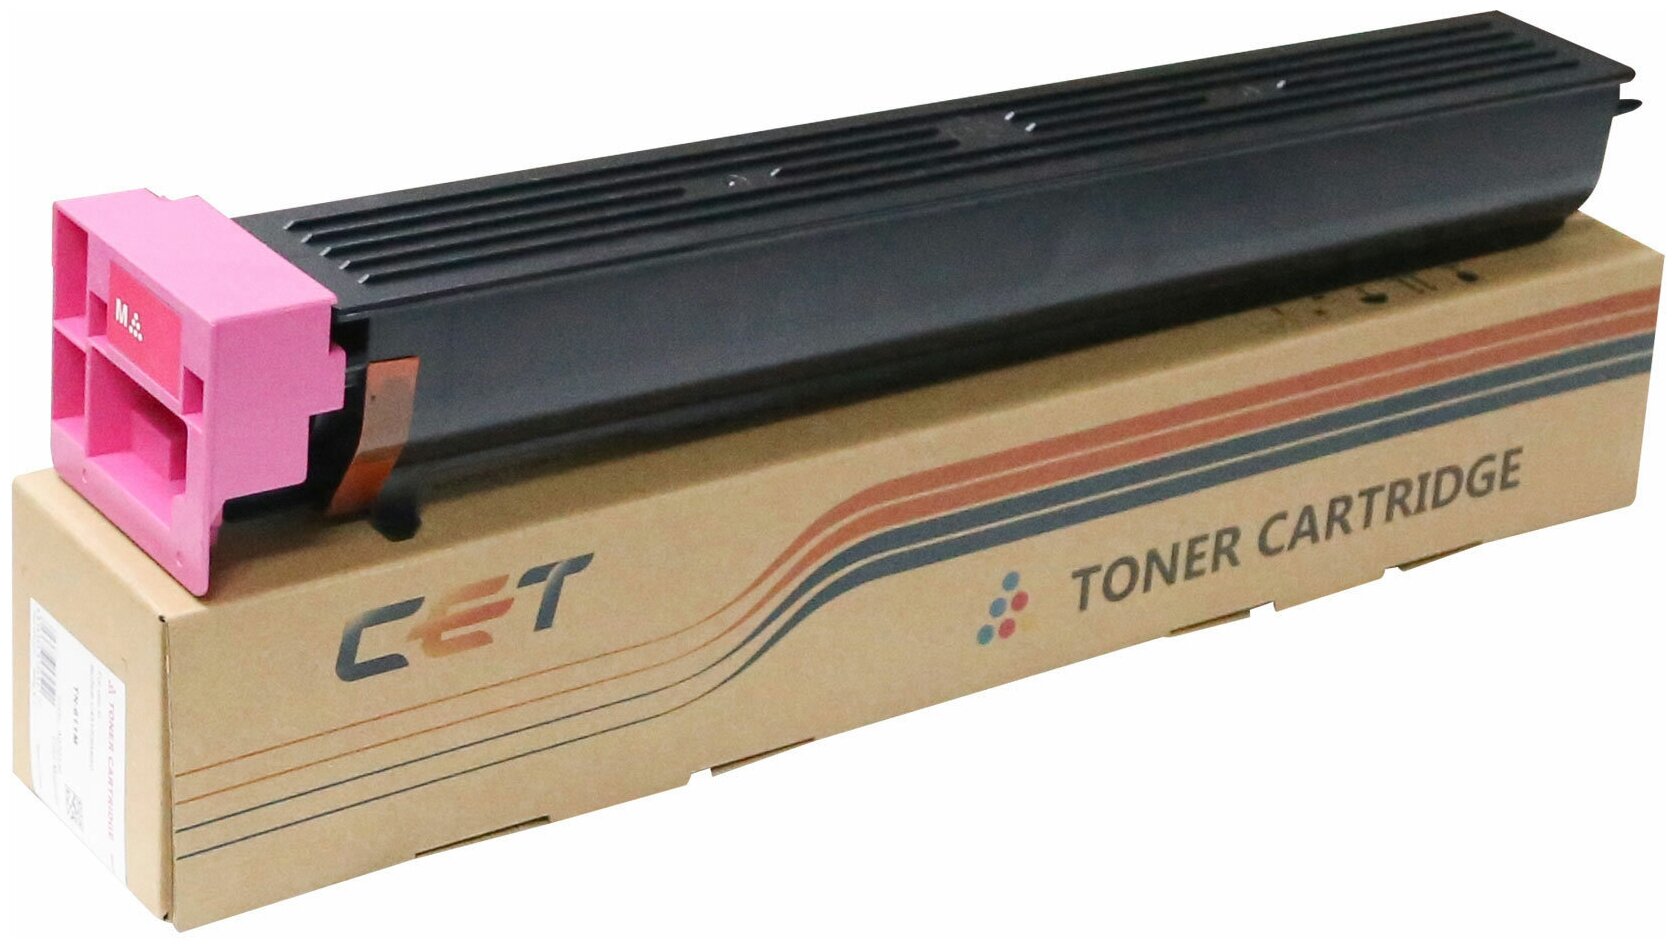 Тонер-картридж CET для KONICA MINOLTA Bizhub C654/C754 (аналог TN-711M/A3VU330) (CET) Magenta, 535г, 31500 стр., CET7298